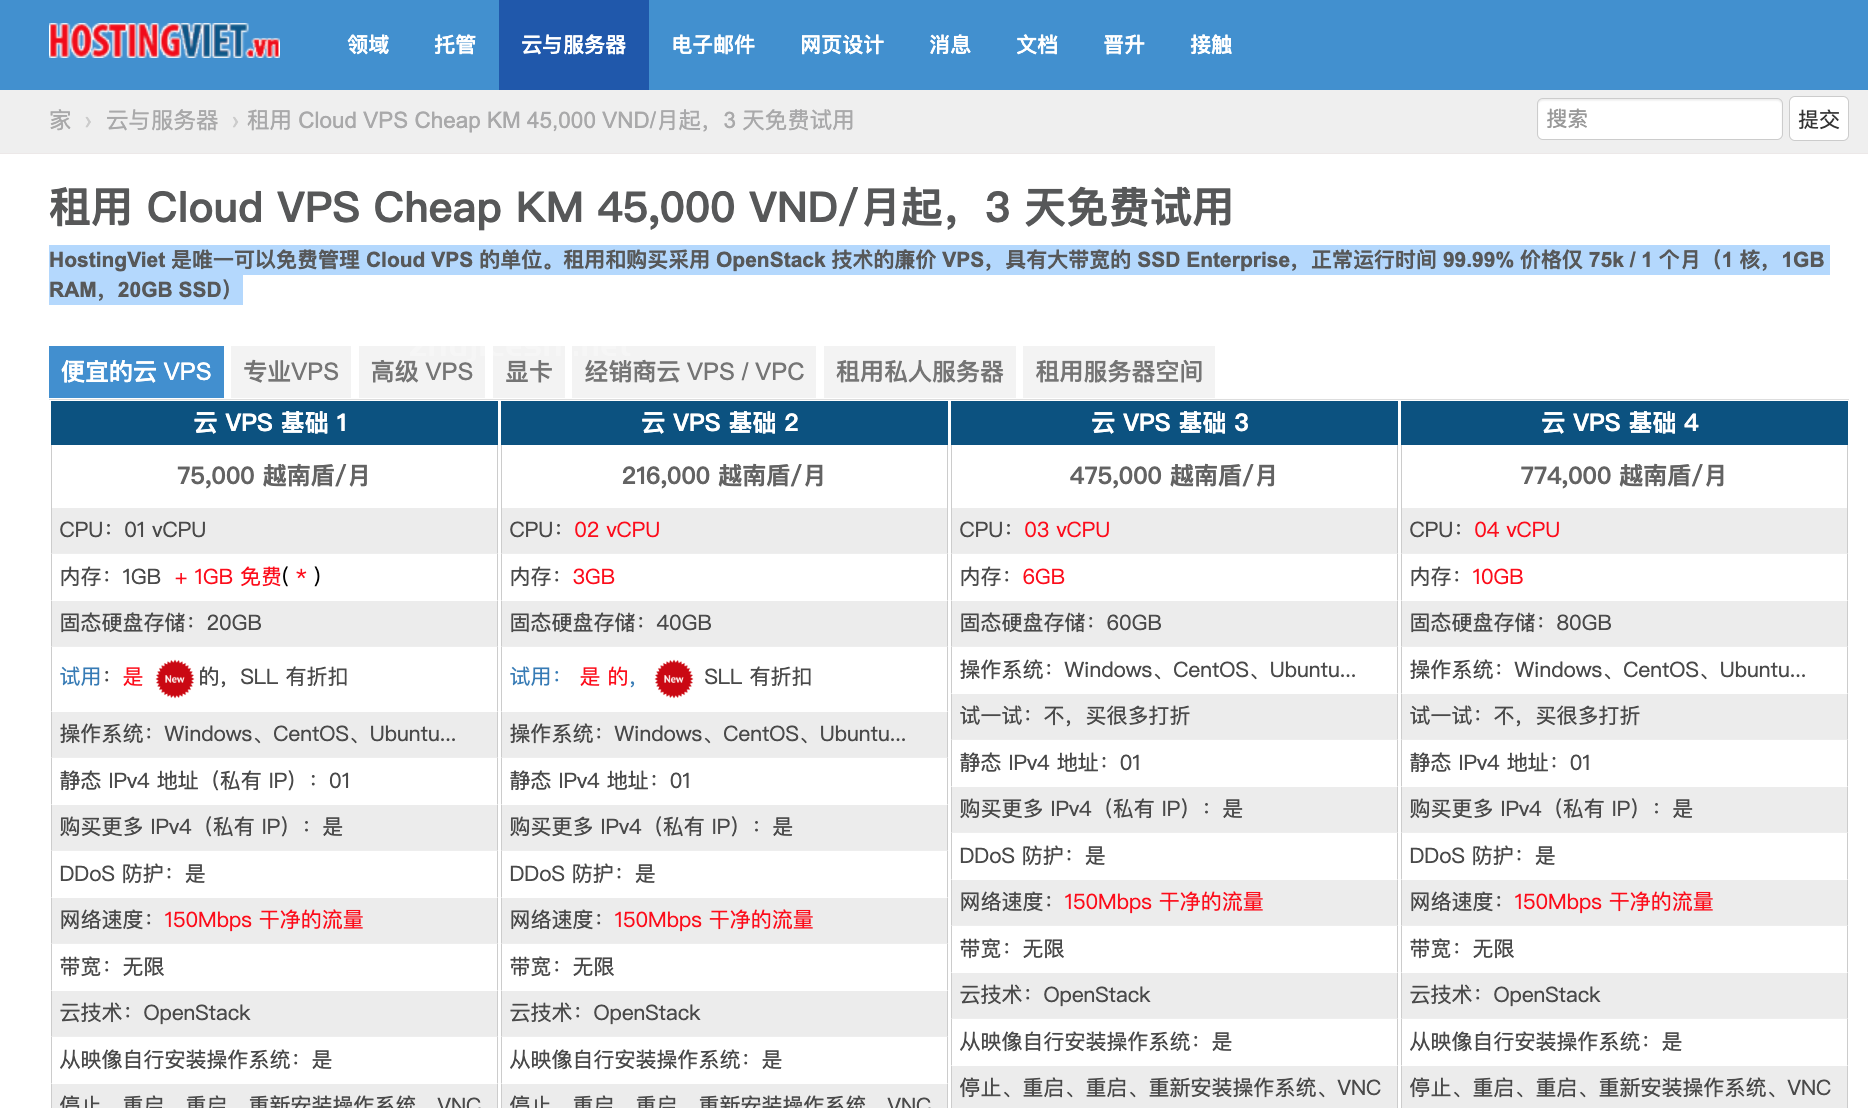 越南服务器推荐HostingViet 价格仅 75k 越南盾/ 1 个月（1 核，1GB RAM，20GB SSD）